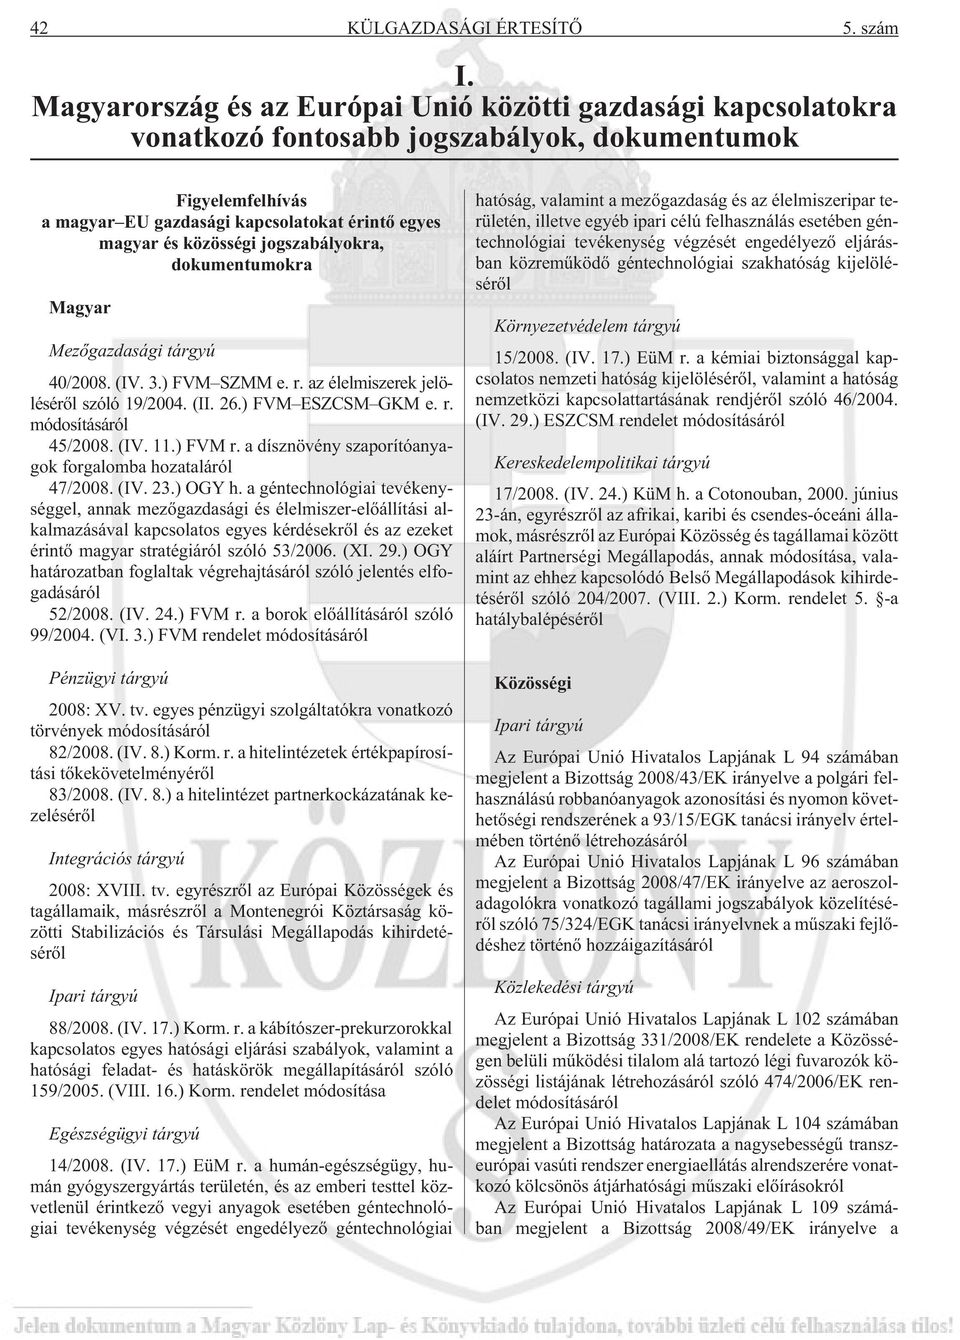 jogszabályokra, dokumentumokra Magyar Mezõgazdasági tárgyú 40/2008. (IV. 3.) FVM SZMM e. r. az élelmiszerek jelölésérõl szóló 19/2004. (II. 26.) FVM ESZCSM GKM e. r. módosításáról 45/2008. (IV. 11.